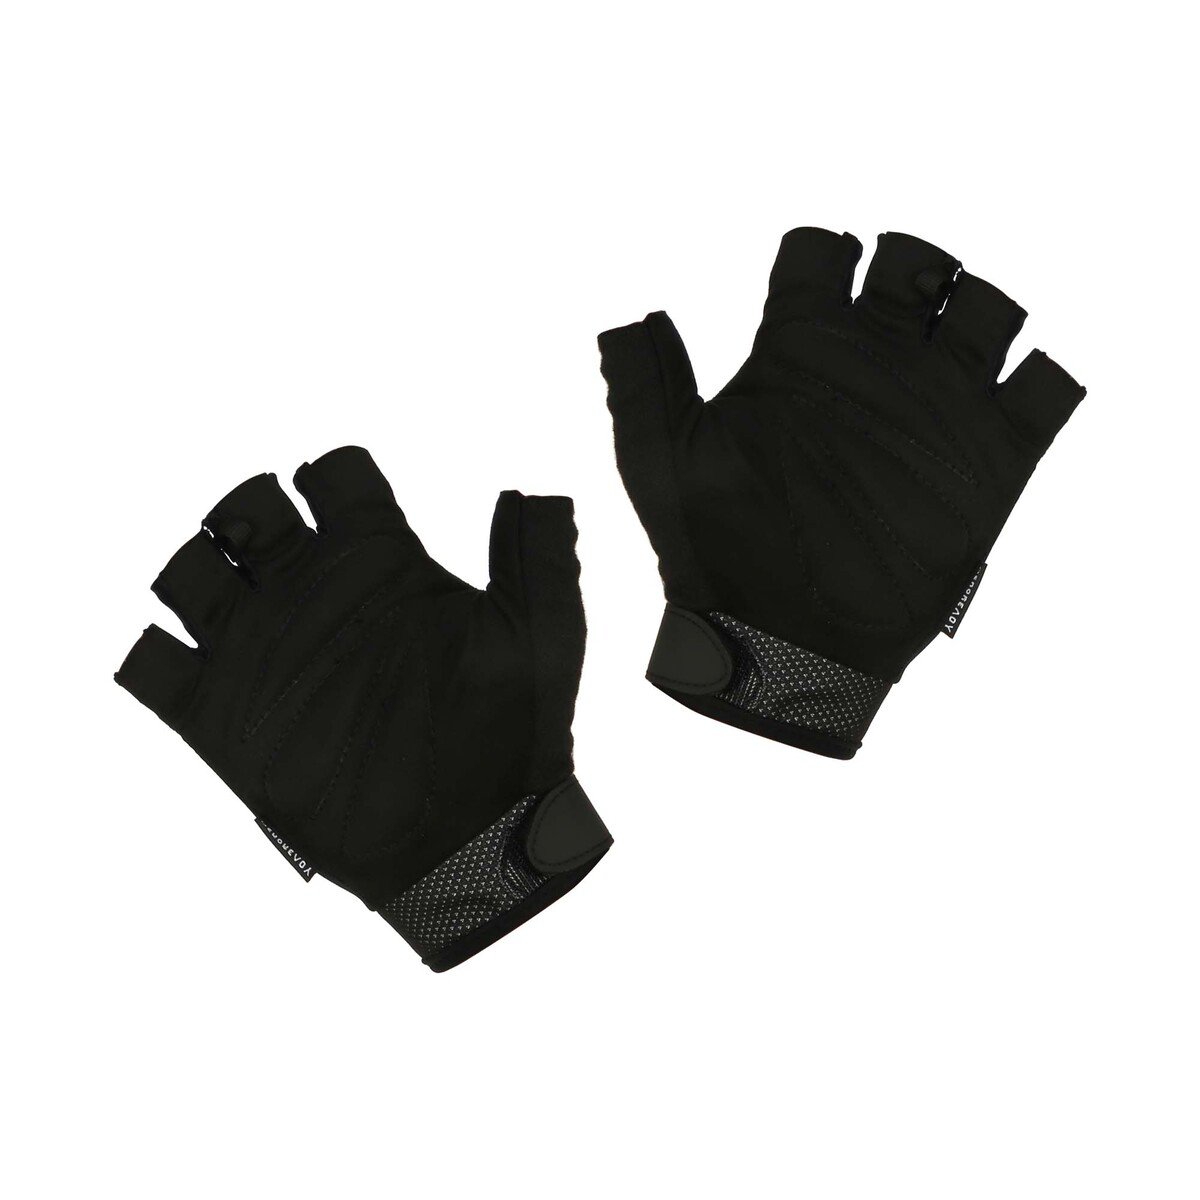 Adidas Gym Gloves 12426 Wht Extra Large